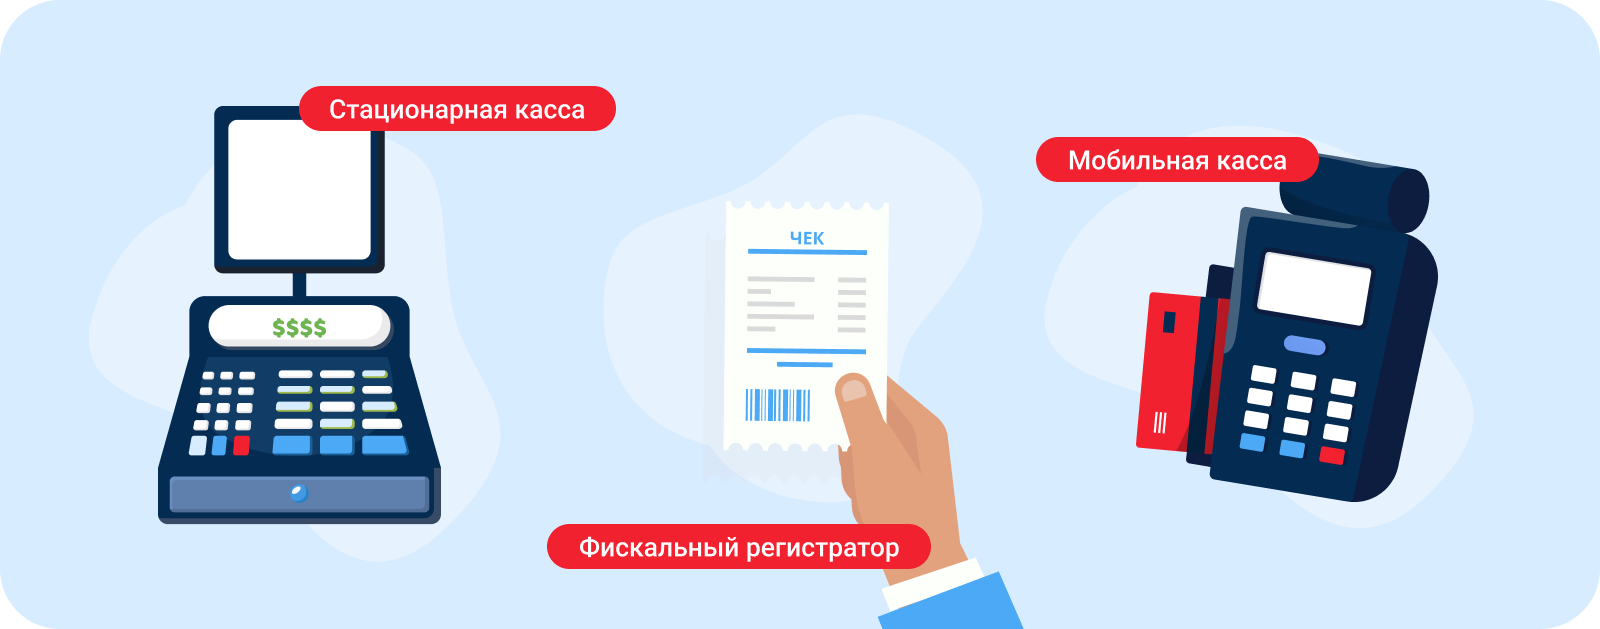 Онлайн-касса для интернет-эквайринга: как выбрать и подключить | MIXPLAT.ru